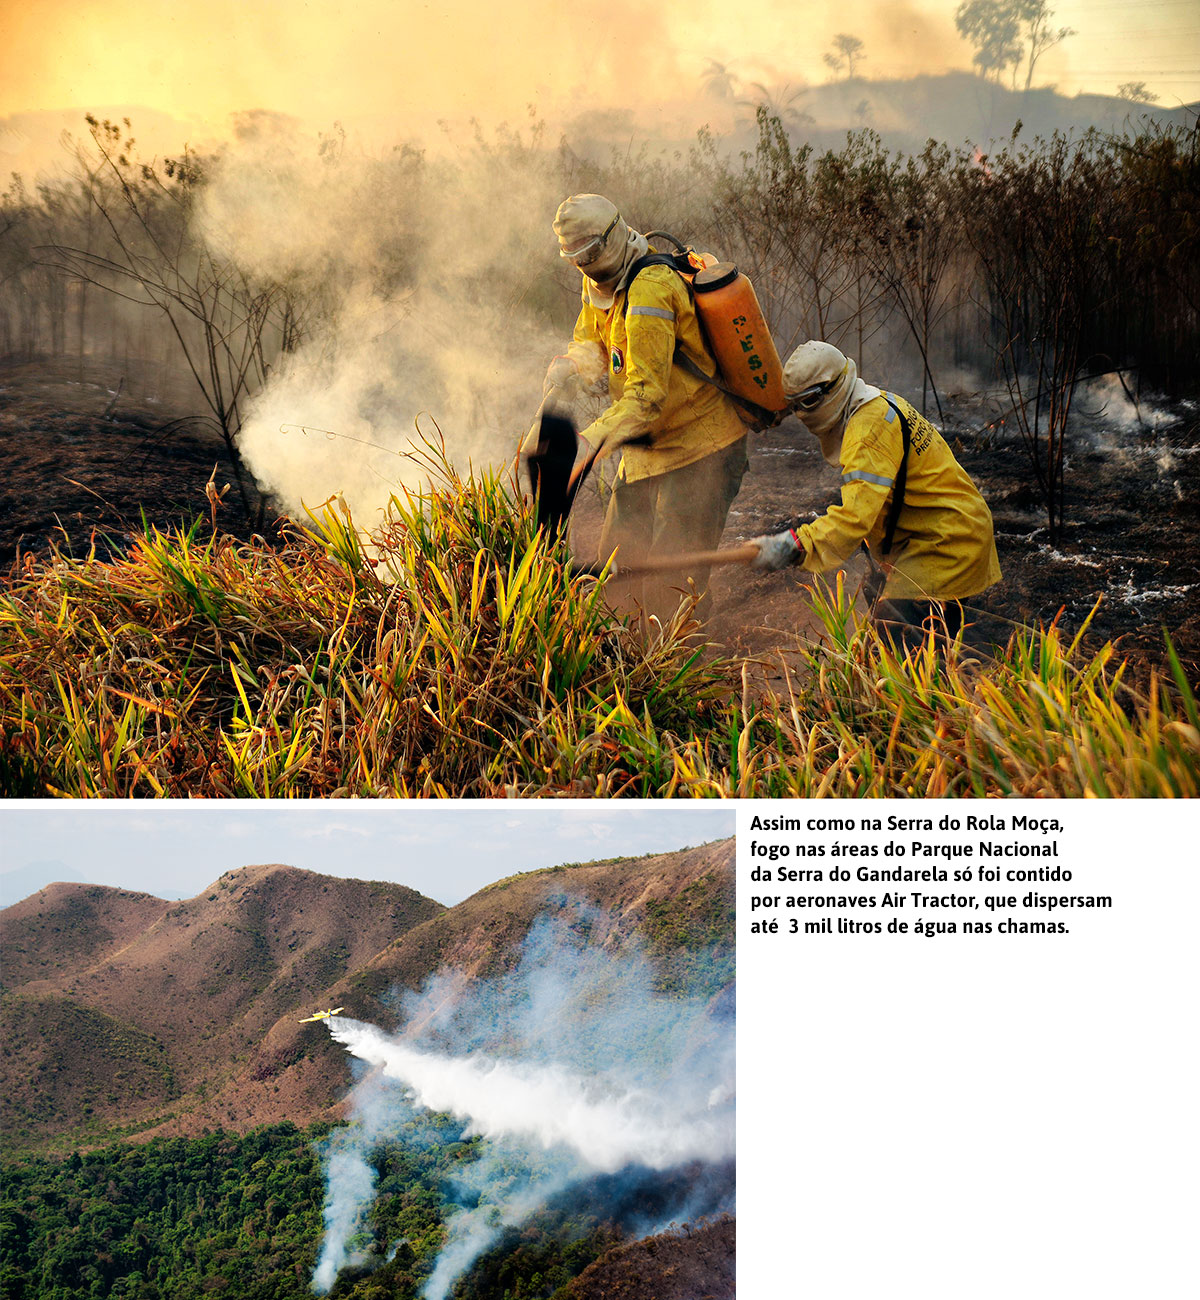 Assim como na Serra do Rola Moça, fogo nas áreas do Parque Nacional da Serra do Gandarela só foi contido por aeronaves Air Tractor, que dispersam até 3 mil litros de água nas chamas. 